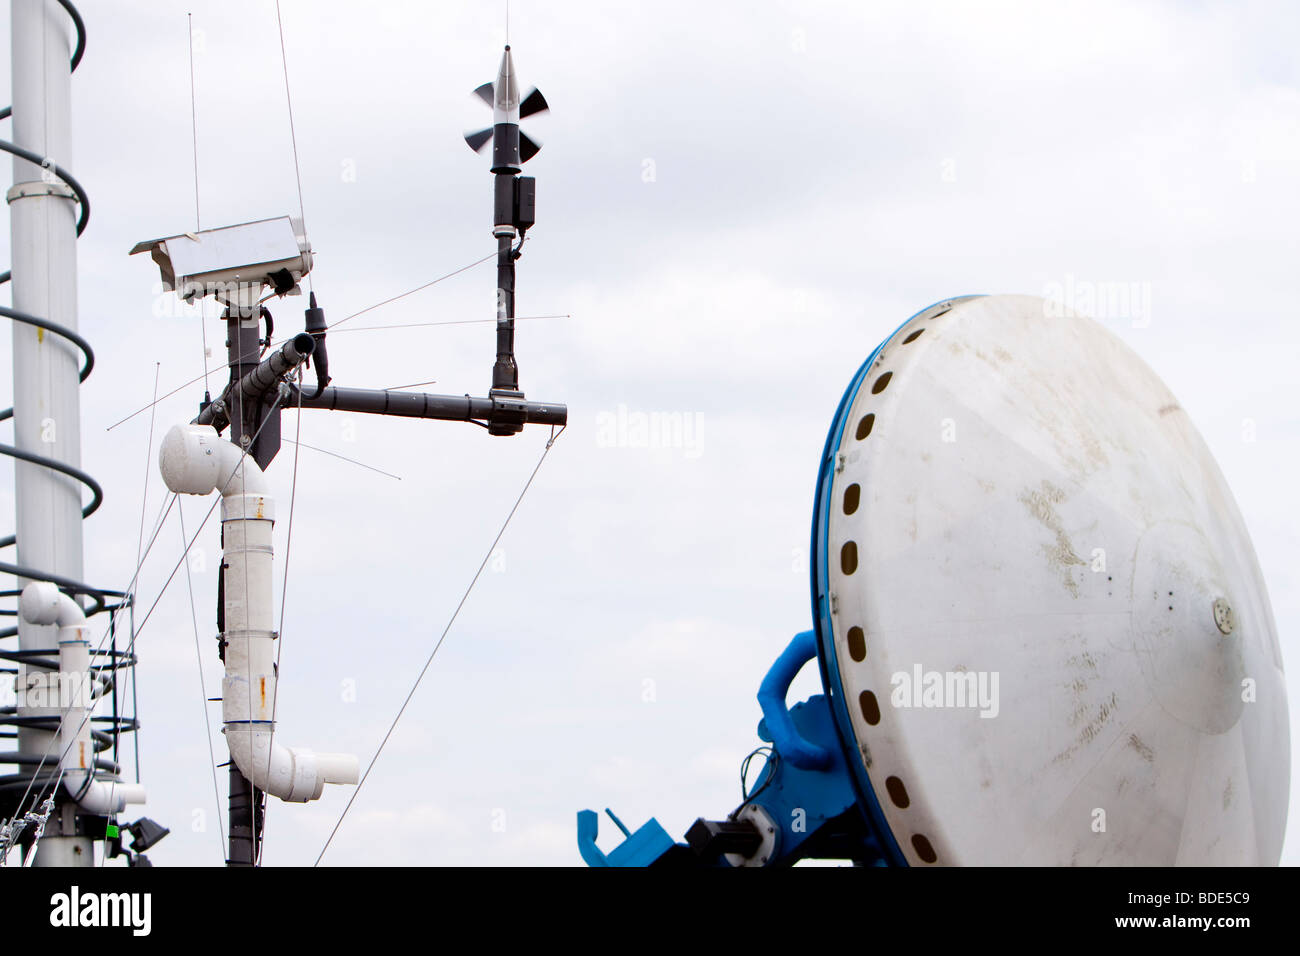 L'antenne radar et d'instruments météorologiques d'une recherche sur les conditions météorologiques Doppler sur roues chariot de Kimball, Nebraska, le 5 juin 2009. Banque D'Images